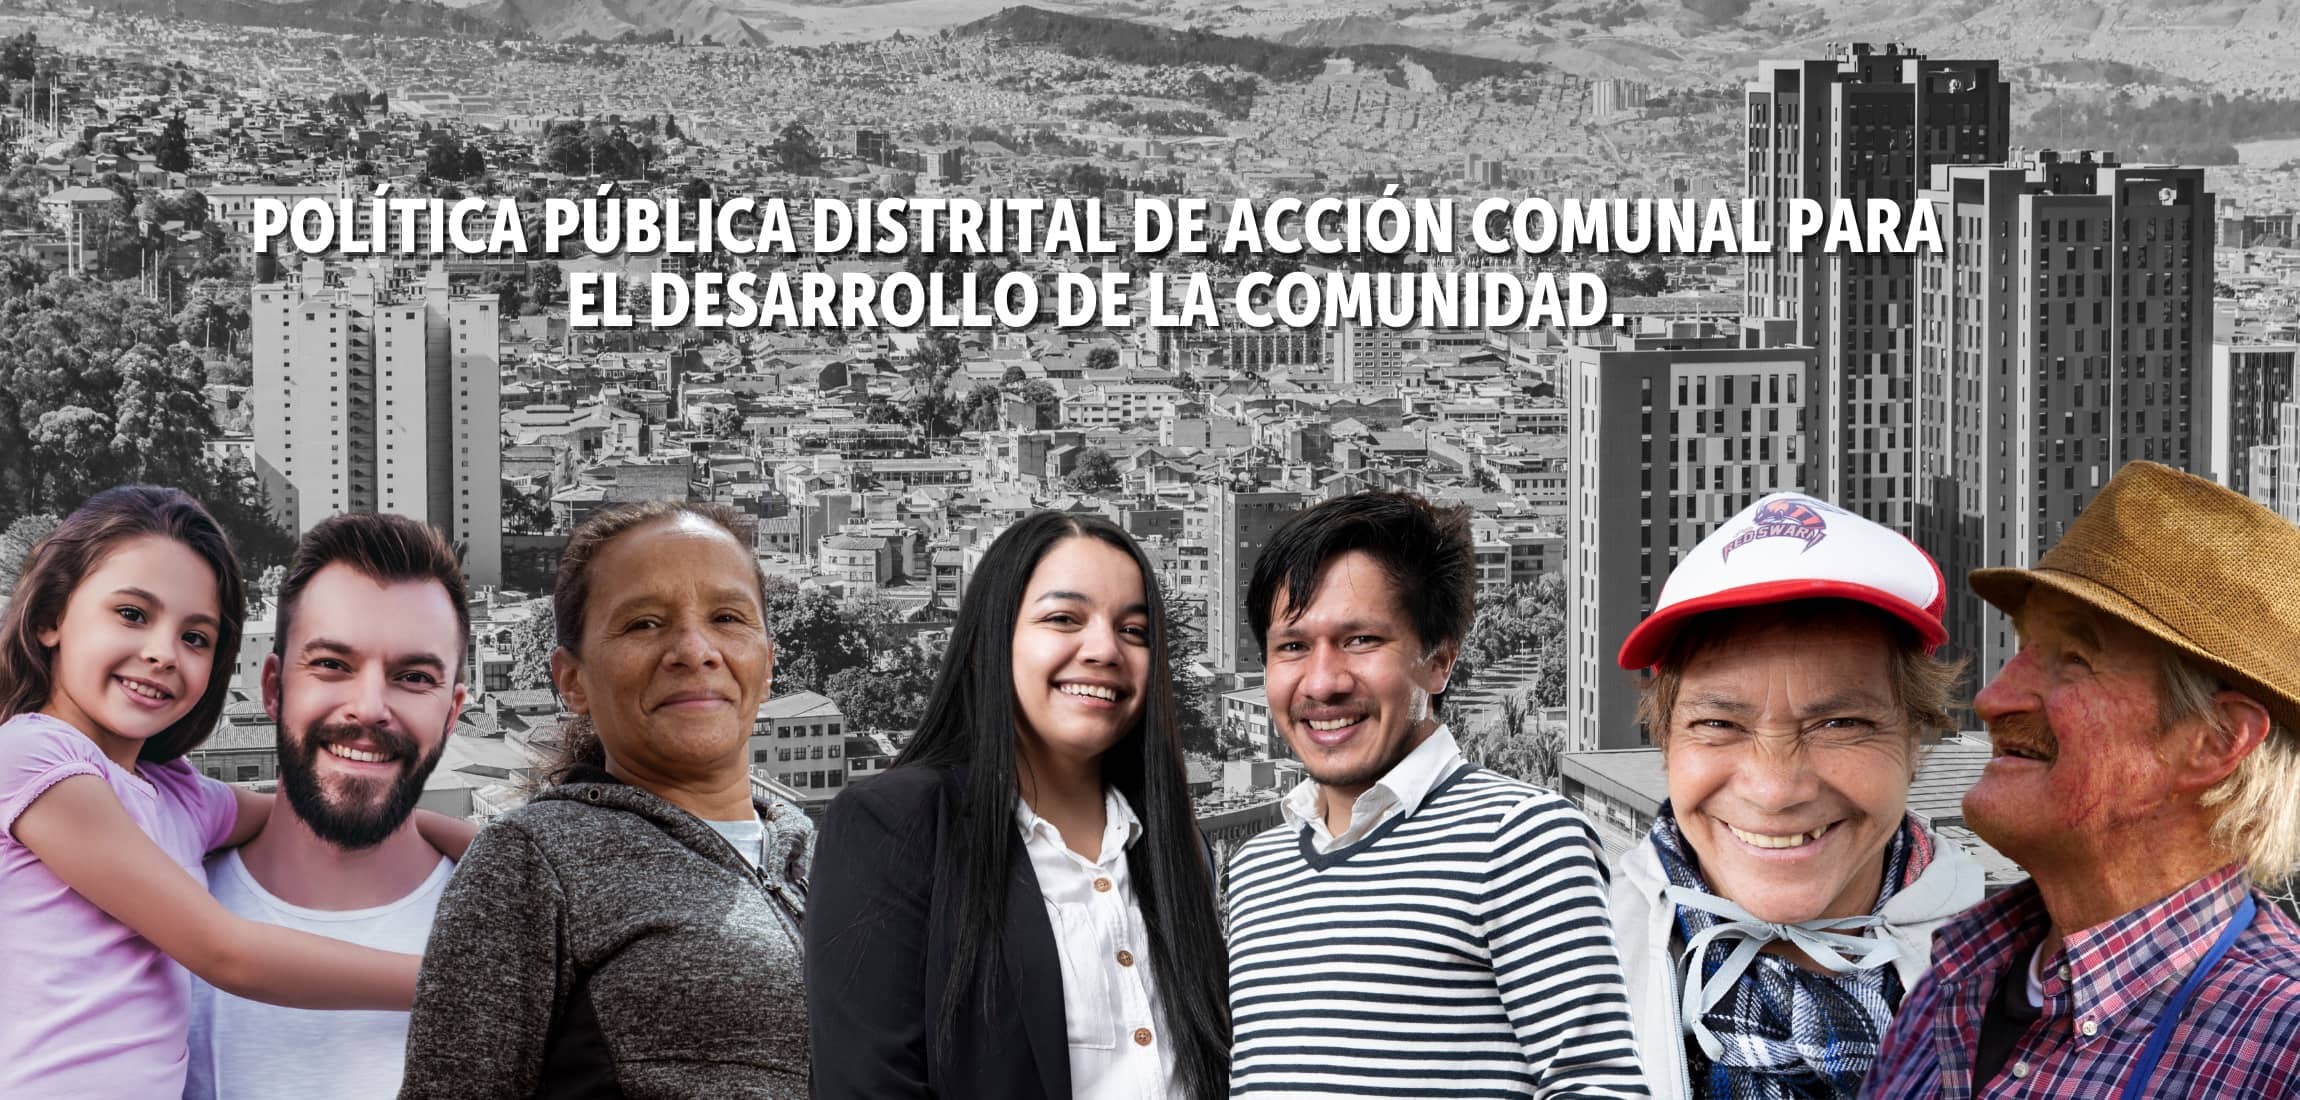 Política Pública Distrital de Acción Comunal para el Desarrollo de la Comunidad